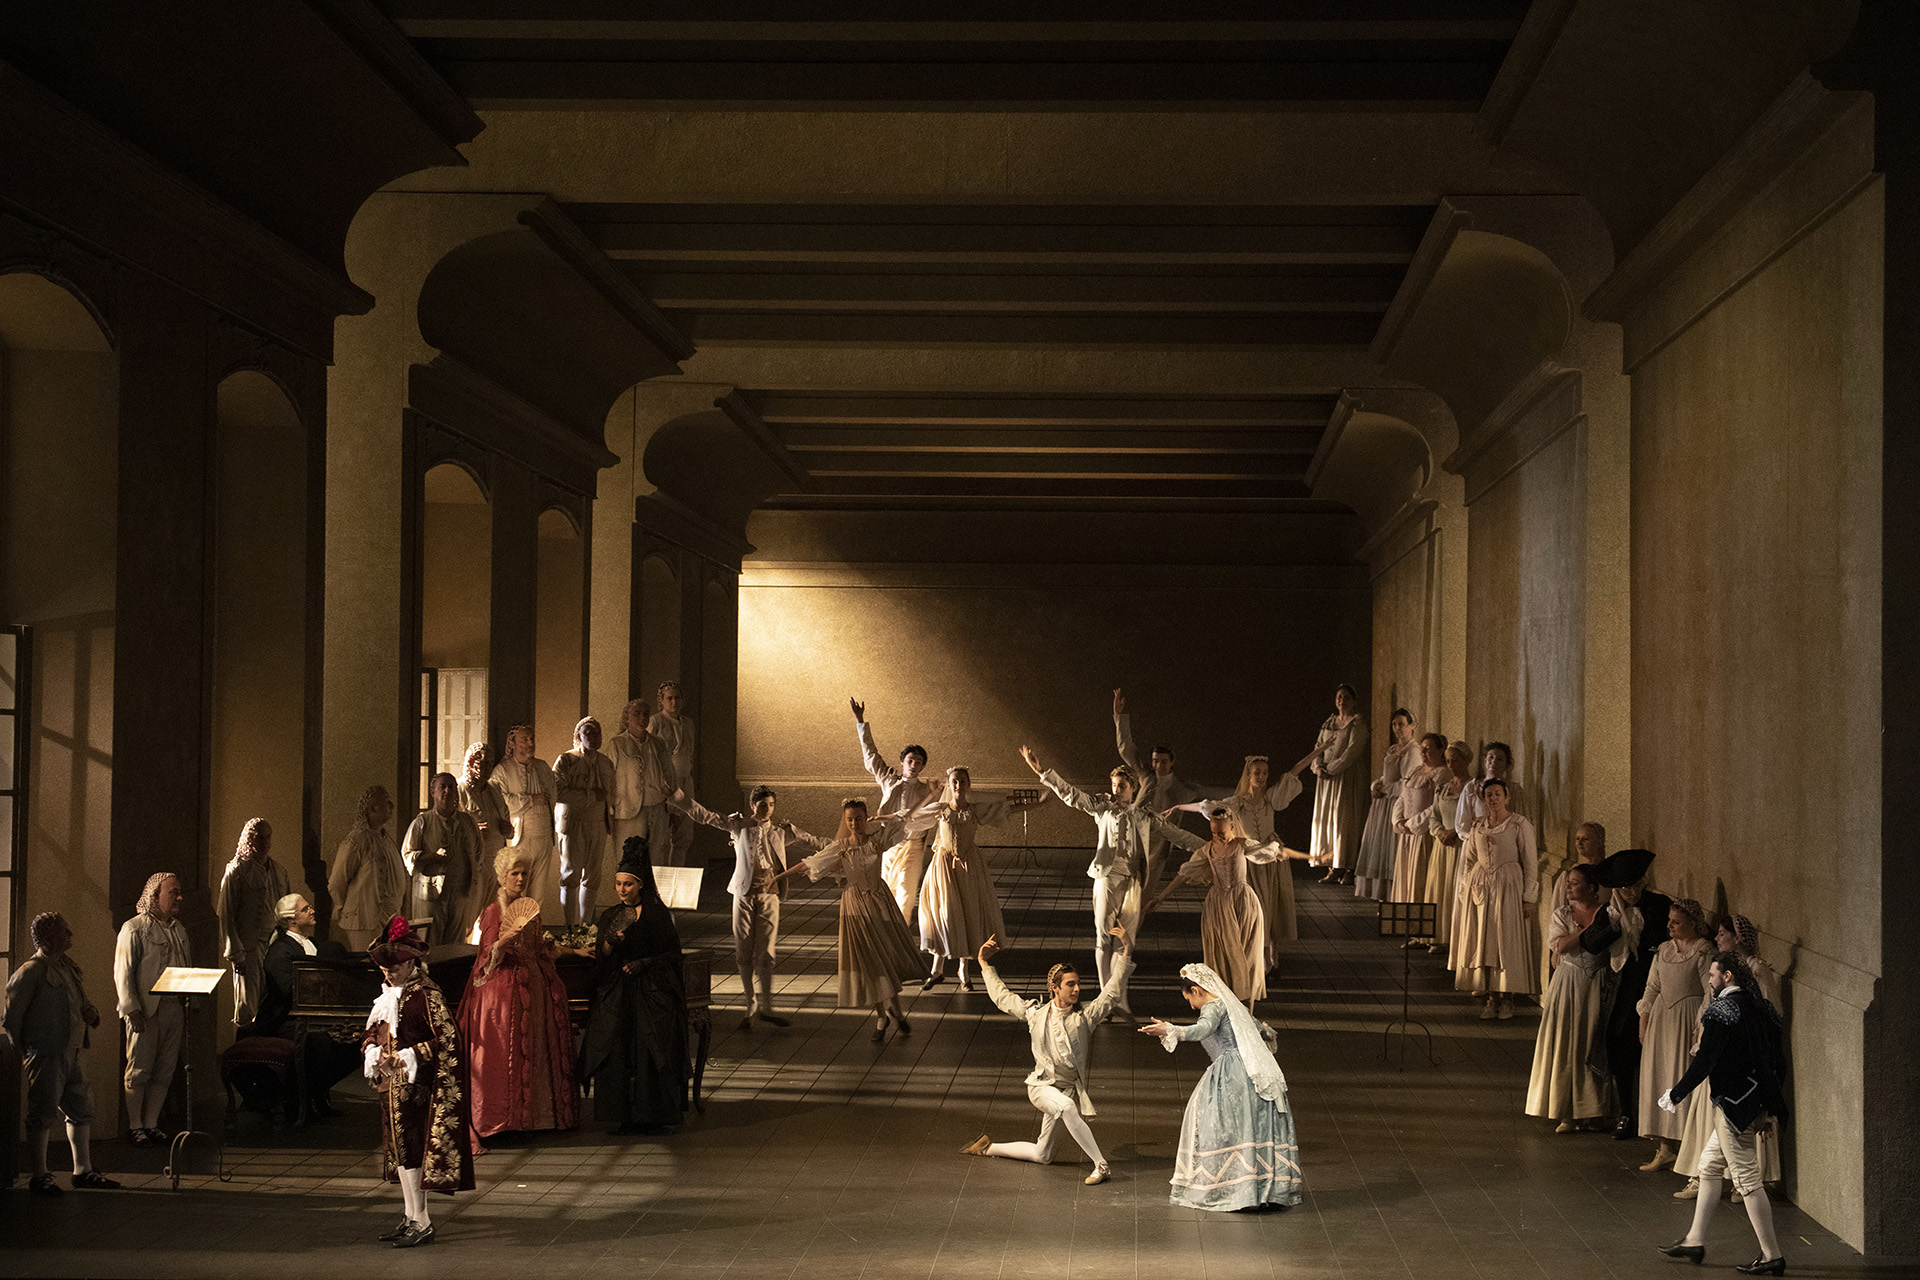 Le nozze di Figaro 701945BADG  ph Brescia e Amisano © Teatro alla Scala